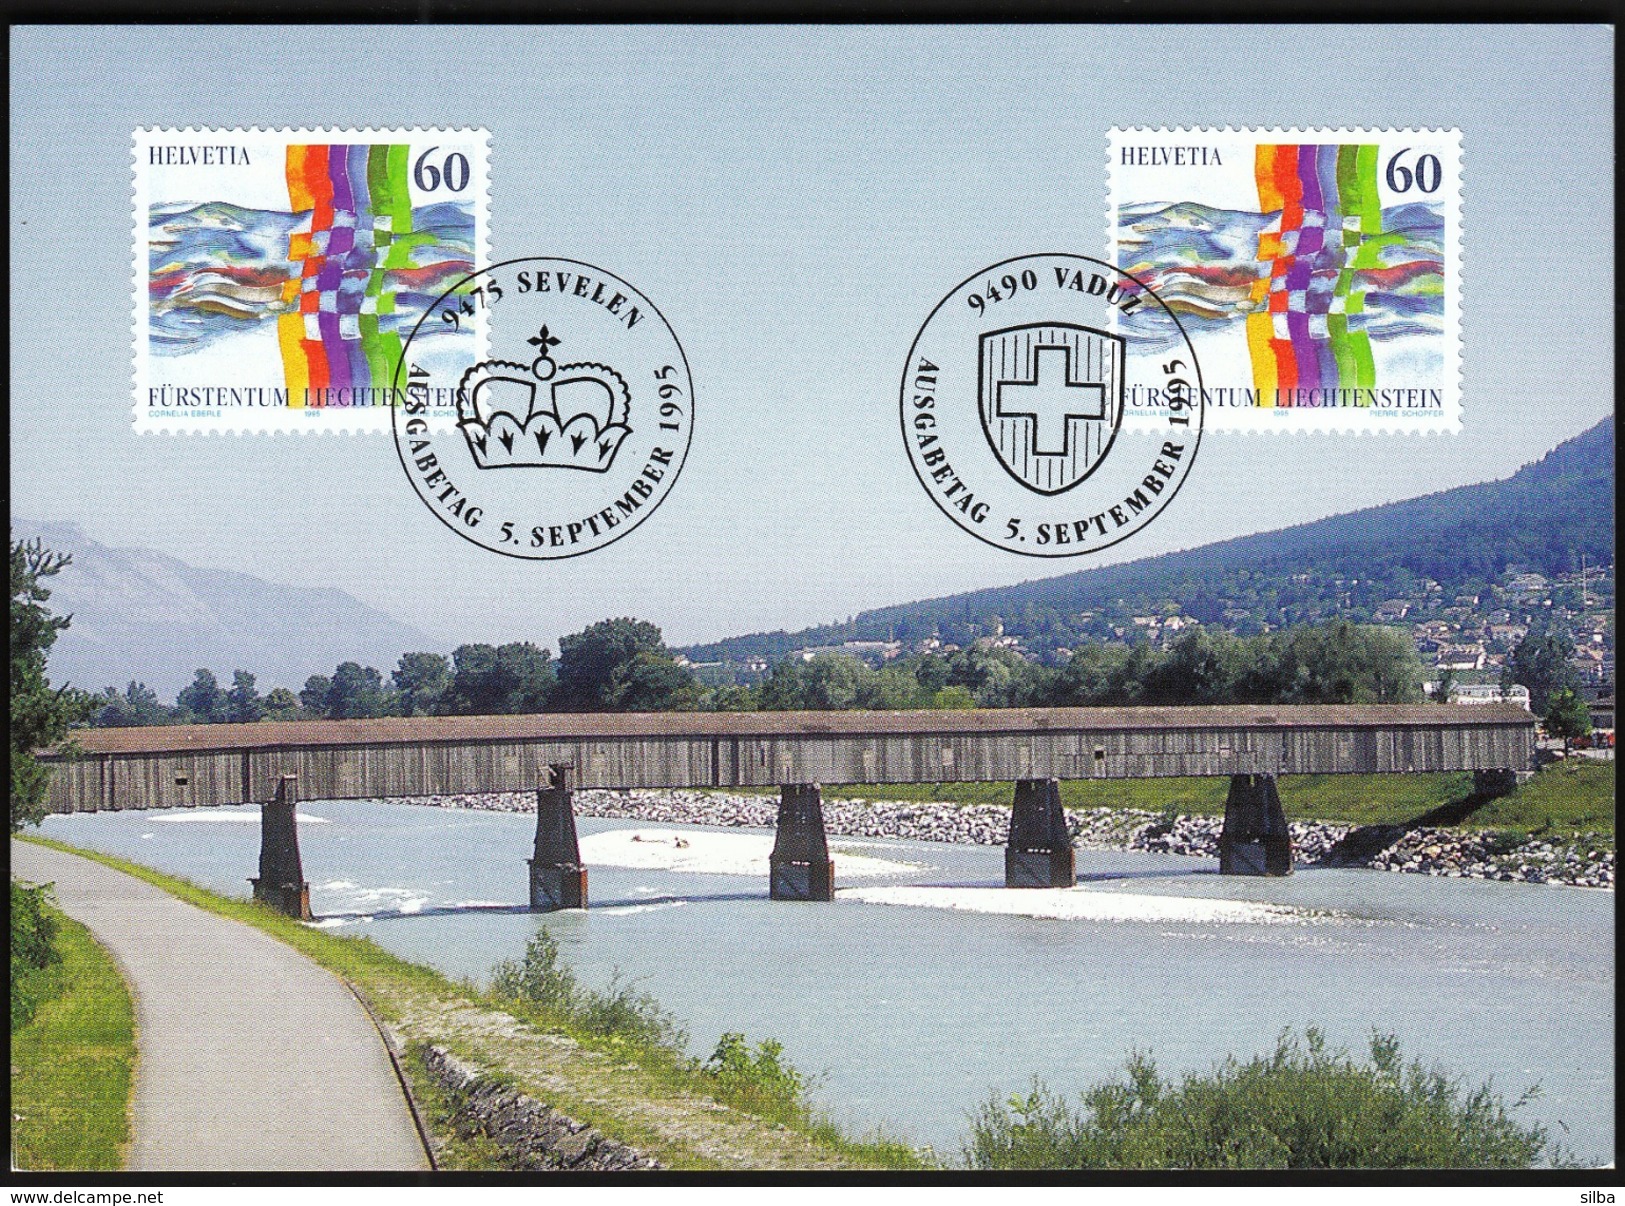 Switzerland With Liechtenstein 1995 / Rhine Bridge, Rheinbrücke Vaduz - Sevelen / MC Maximum Card / Joint Issue - Ponti